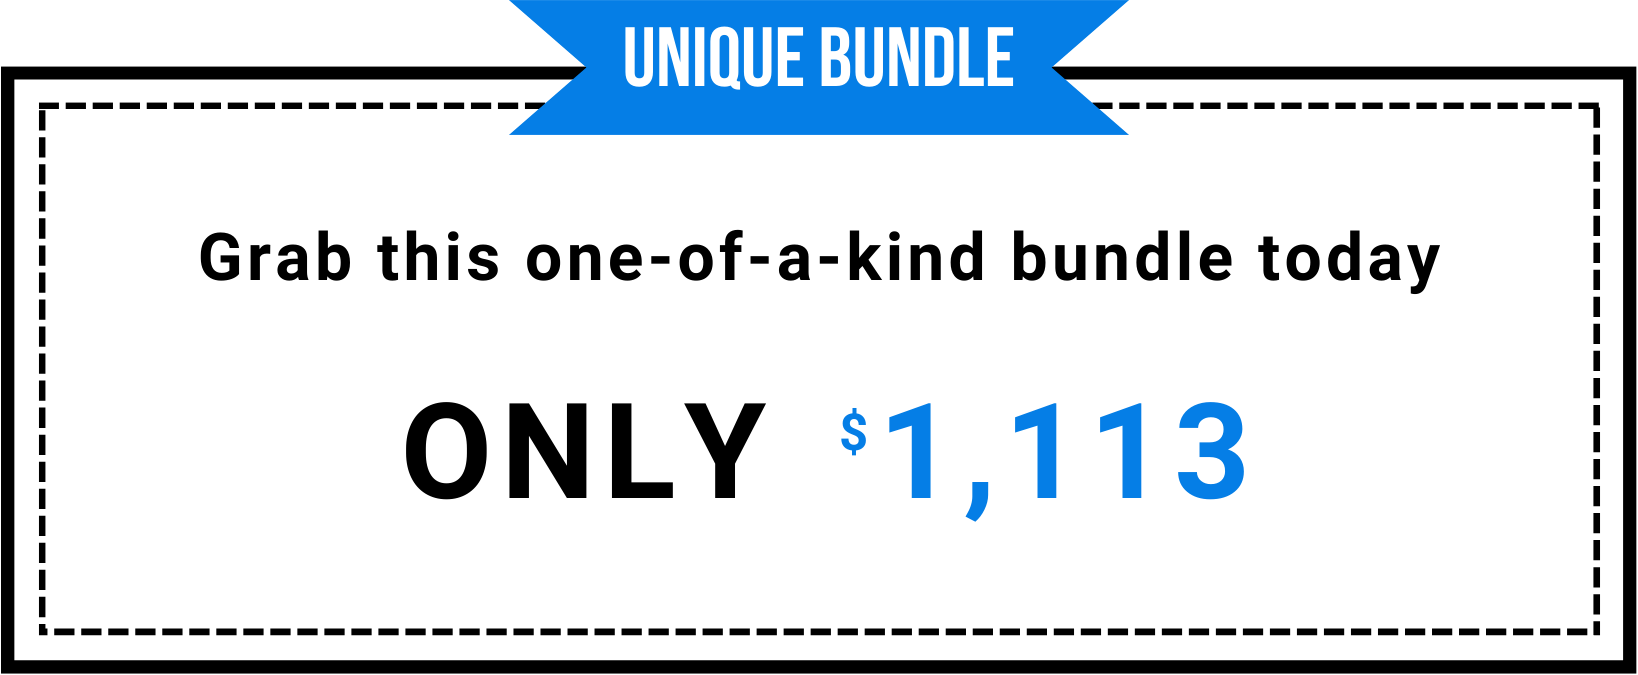 Unique bundle $1113